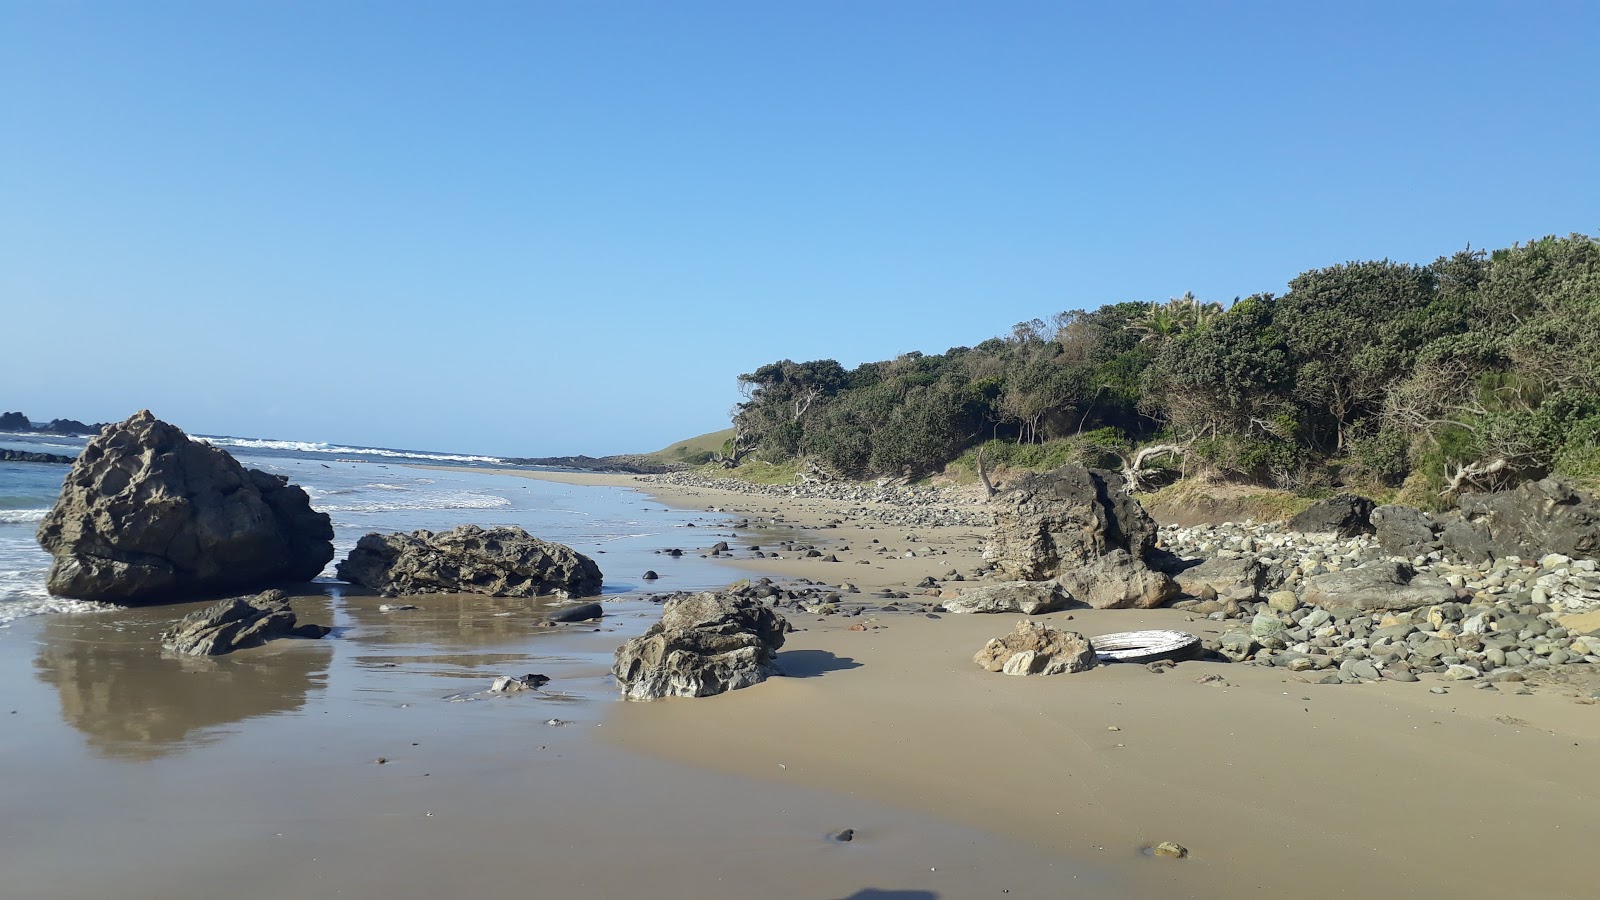 Fotografie cu Umngazana beach amplasat într-o zonă naturală